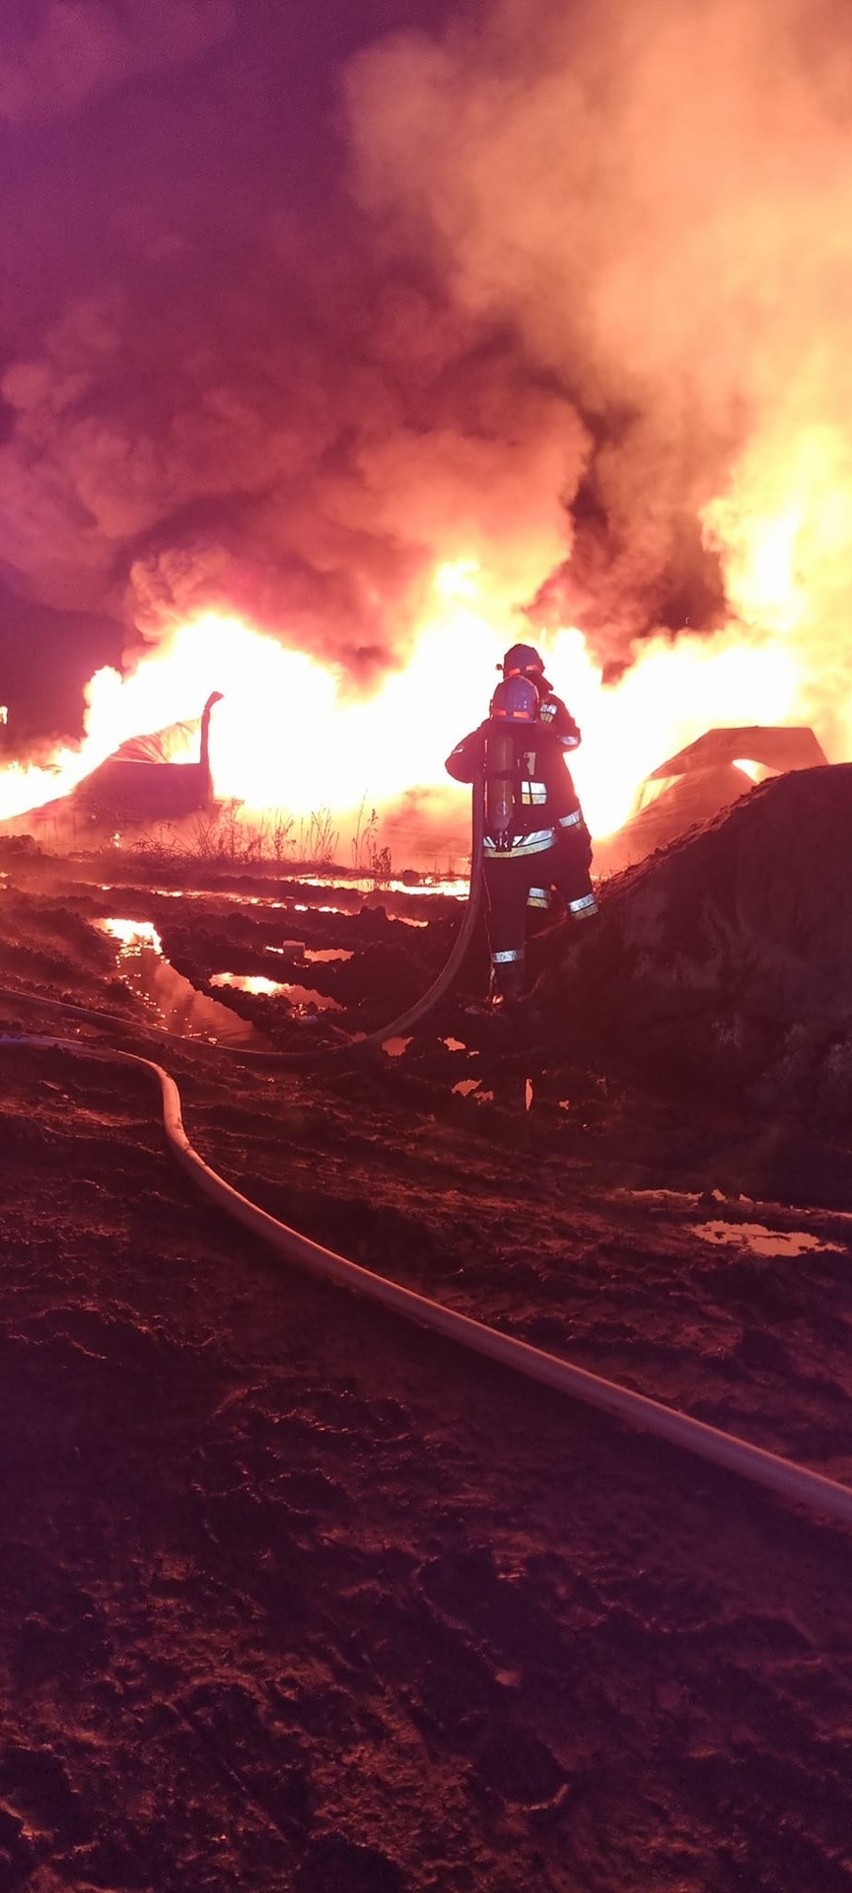 Pożar hali w miejscowości Wieszowa - zdarzenie wyglądało...